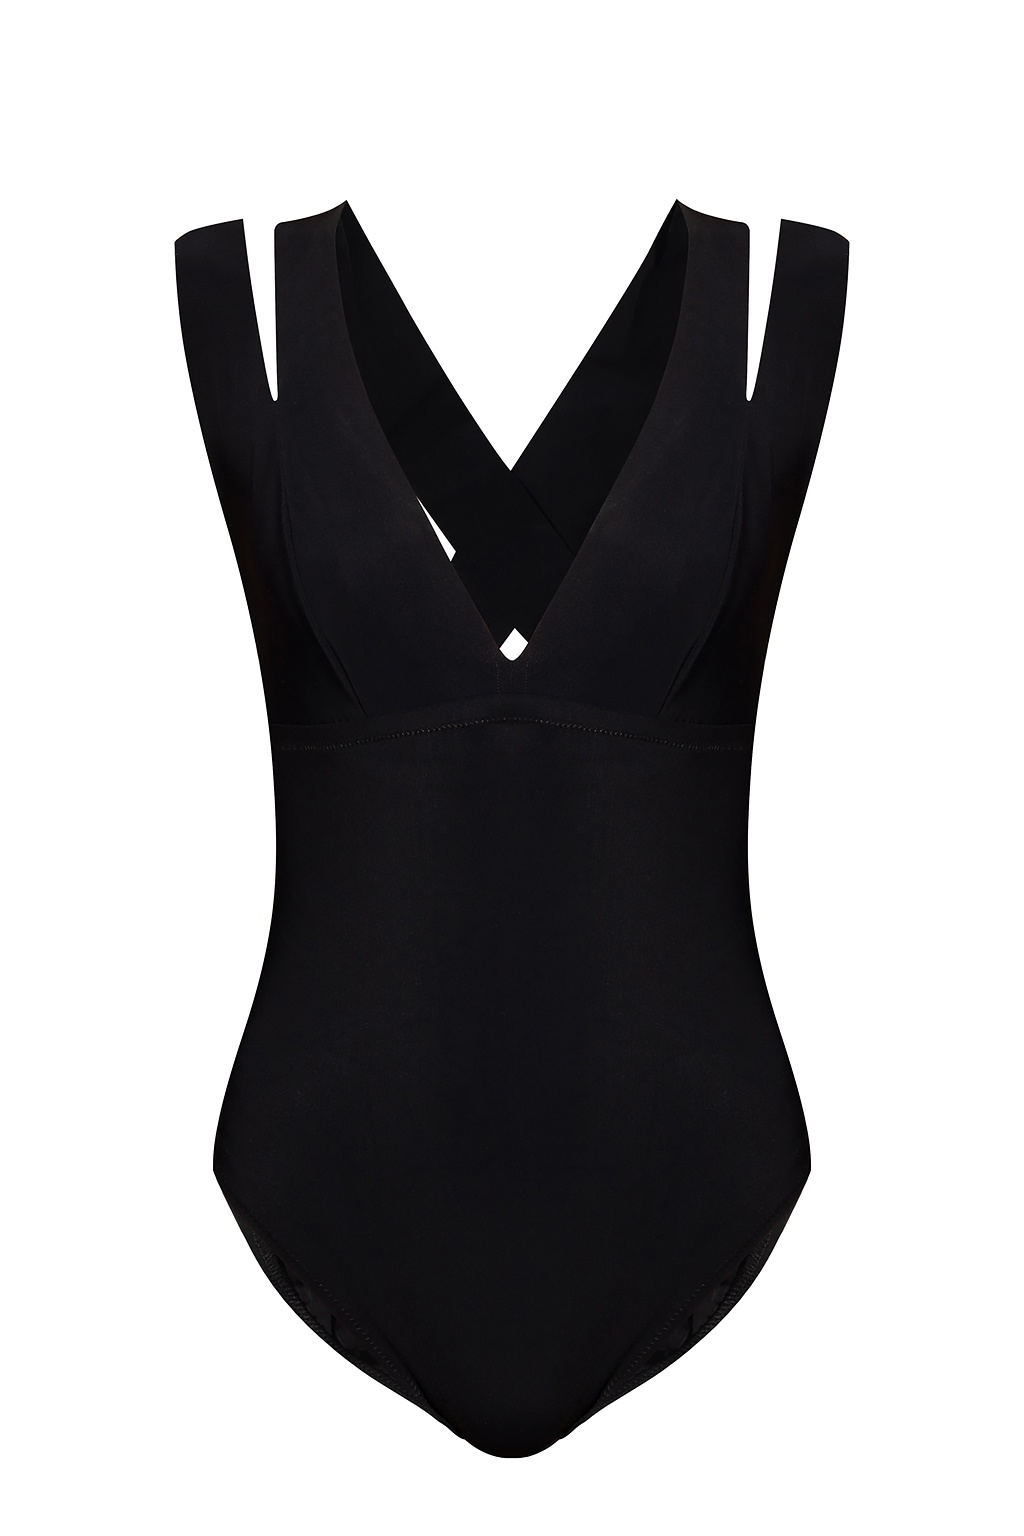 Pain de Sucre One-piece swimsuit | Women's Clothing | Vitkac